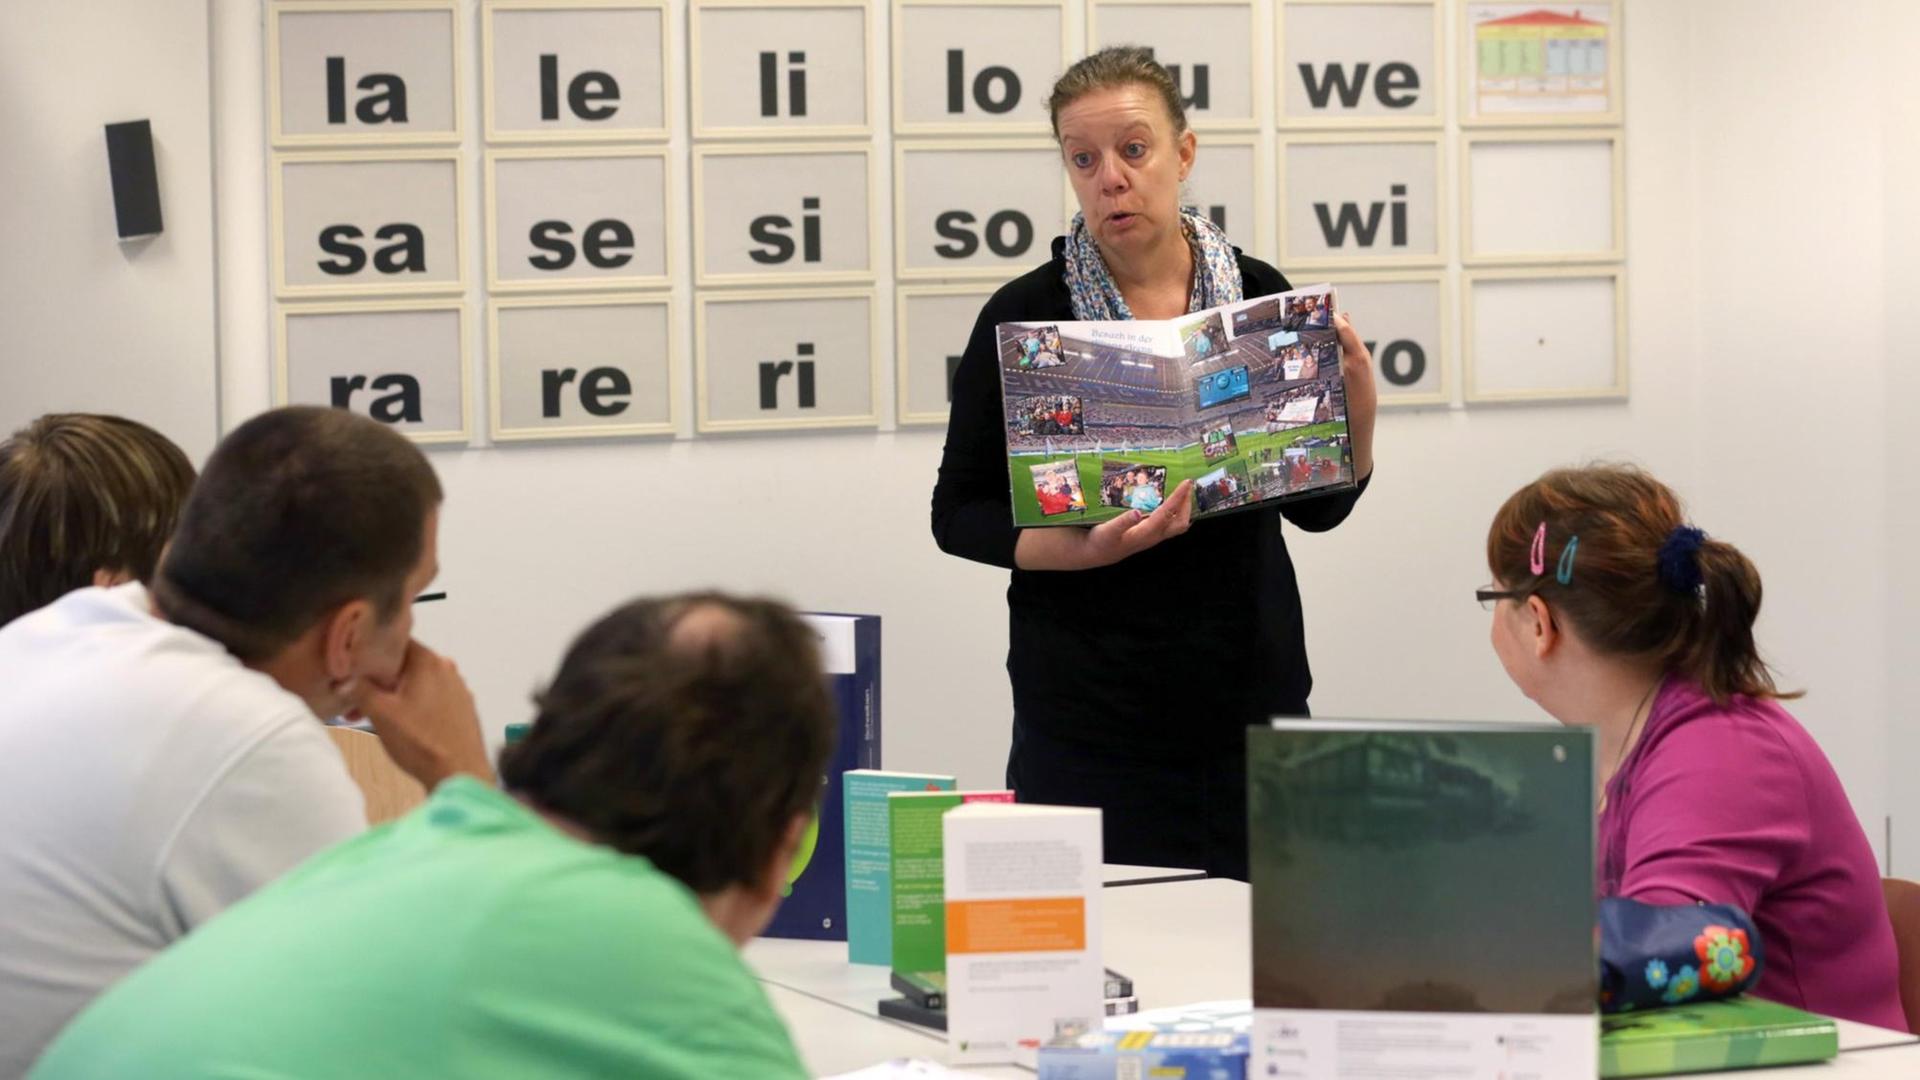 Erwachsene sitzen in einem Klassen-Zimmer und lernen lesen und schreiben. Eine Lehrerin zeigt ein Buch. An der Tafel sind Buchstaben zu lesen.